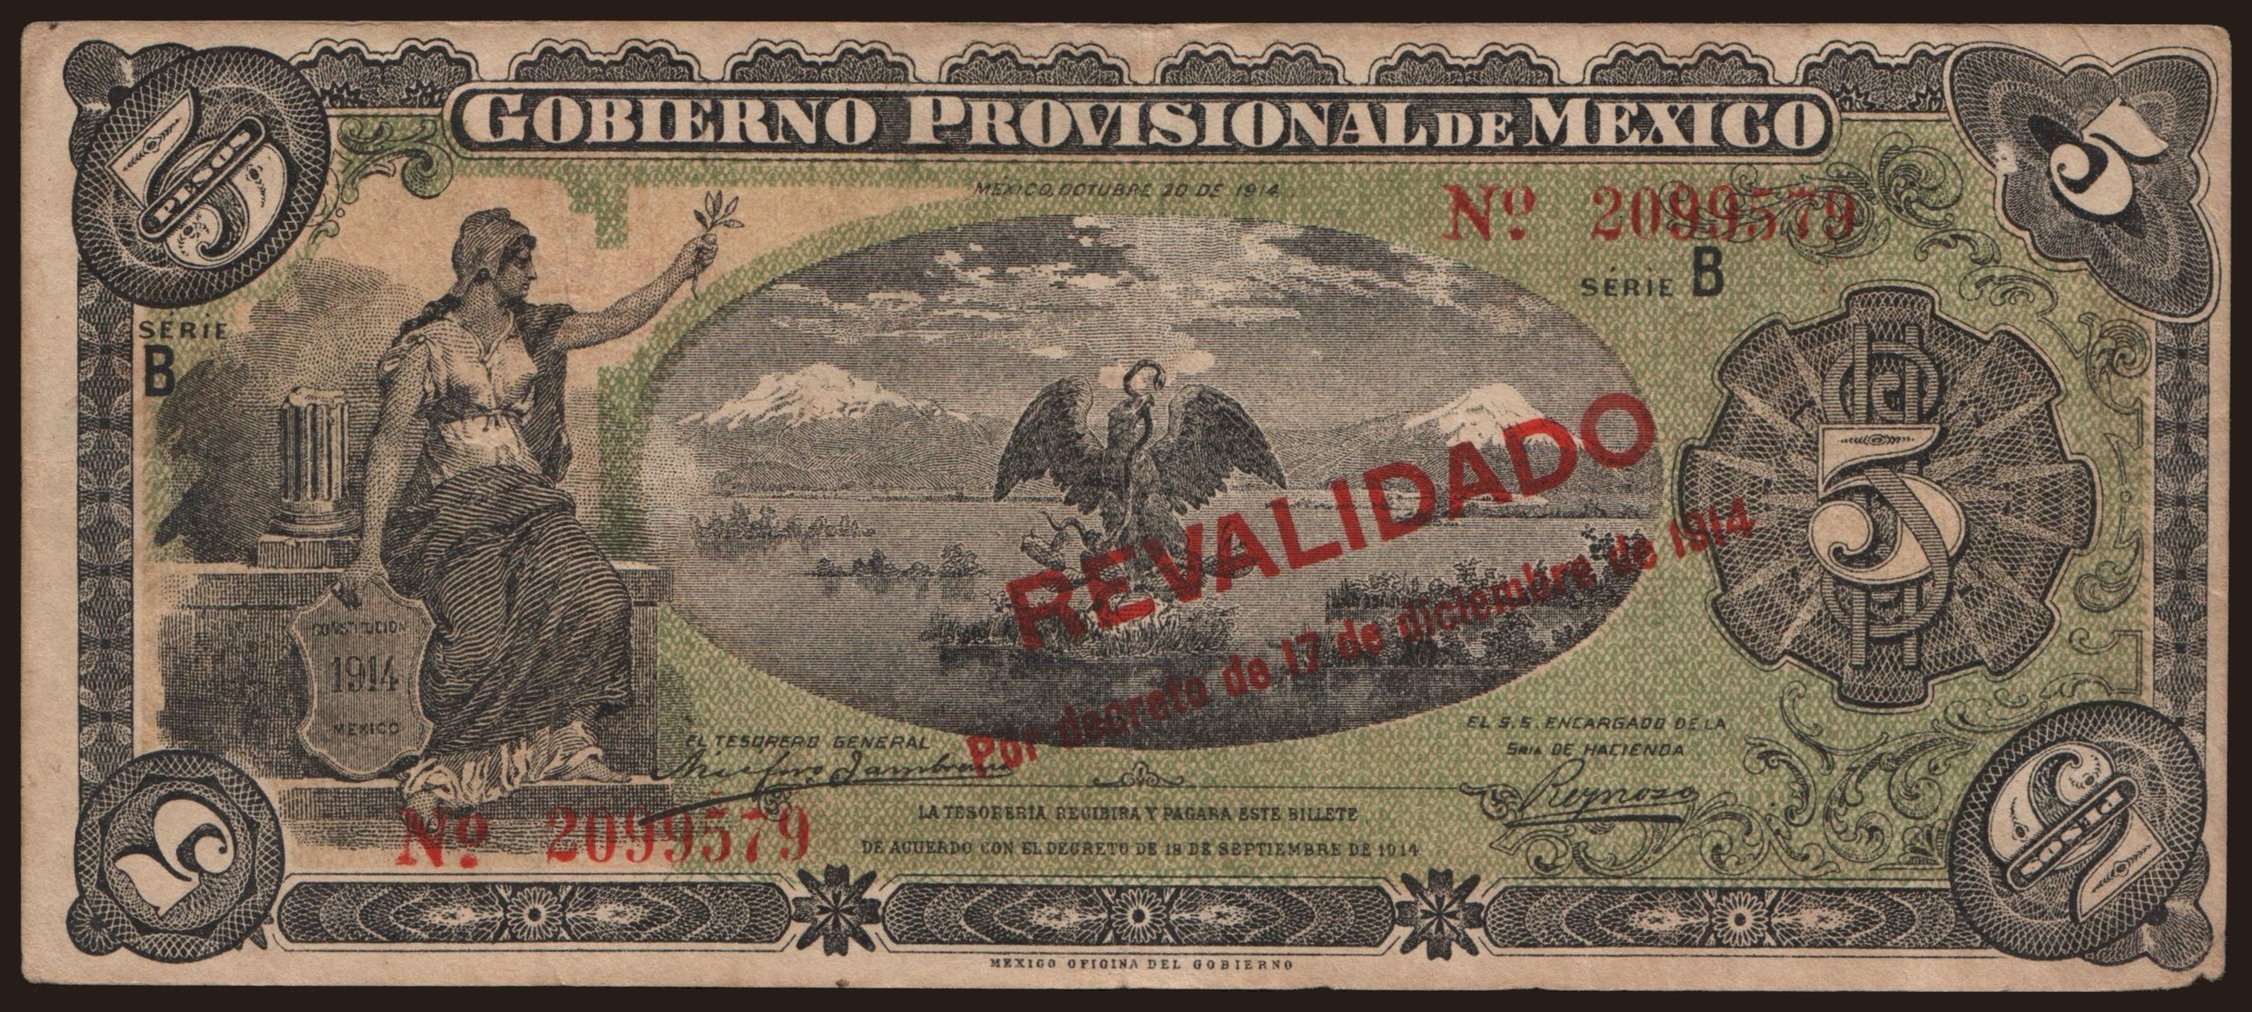 Gobierno Provisional de Mexico, 5 pesos, 1914